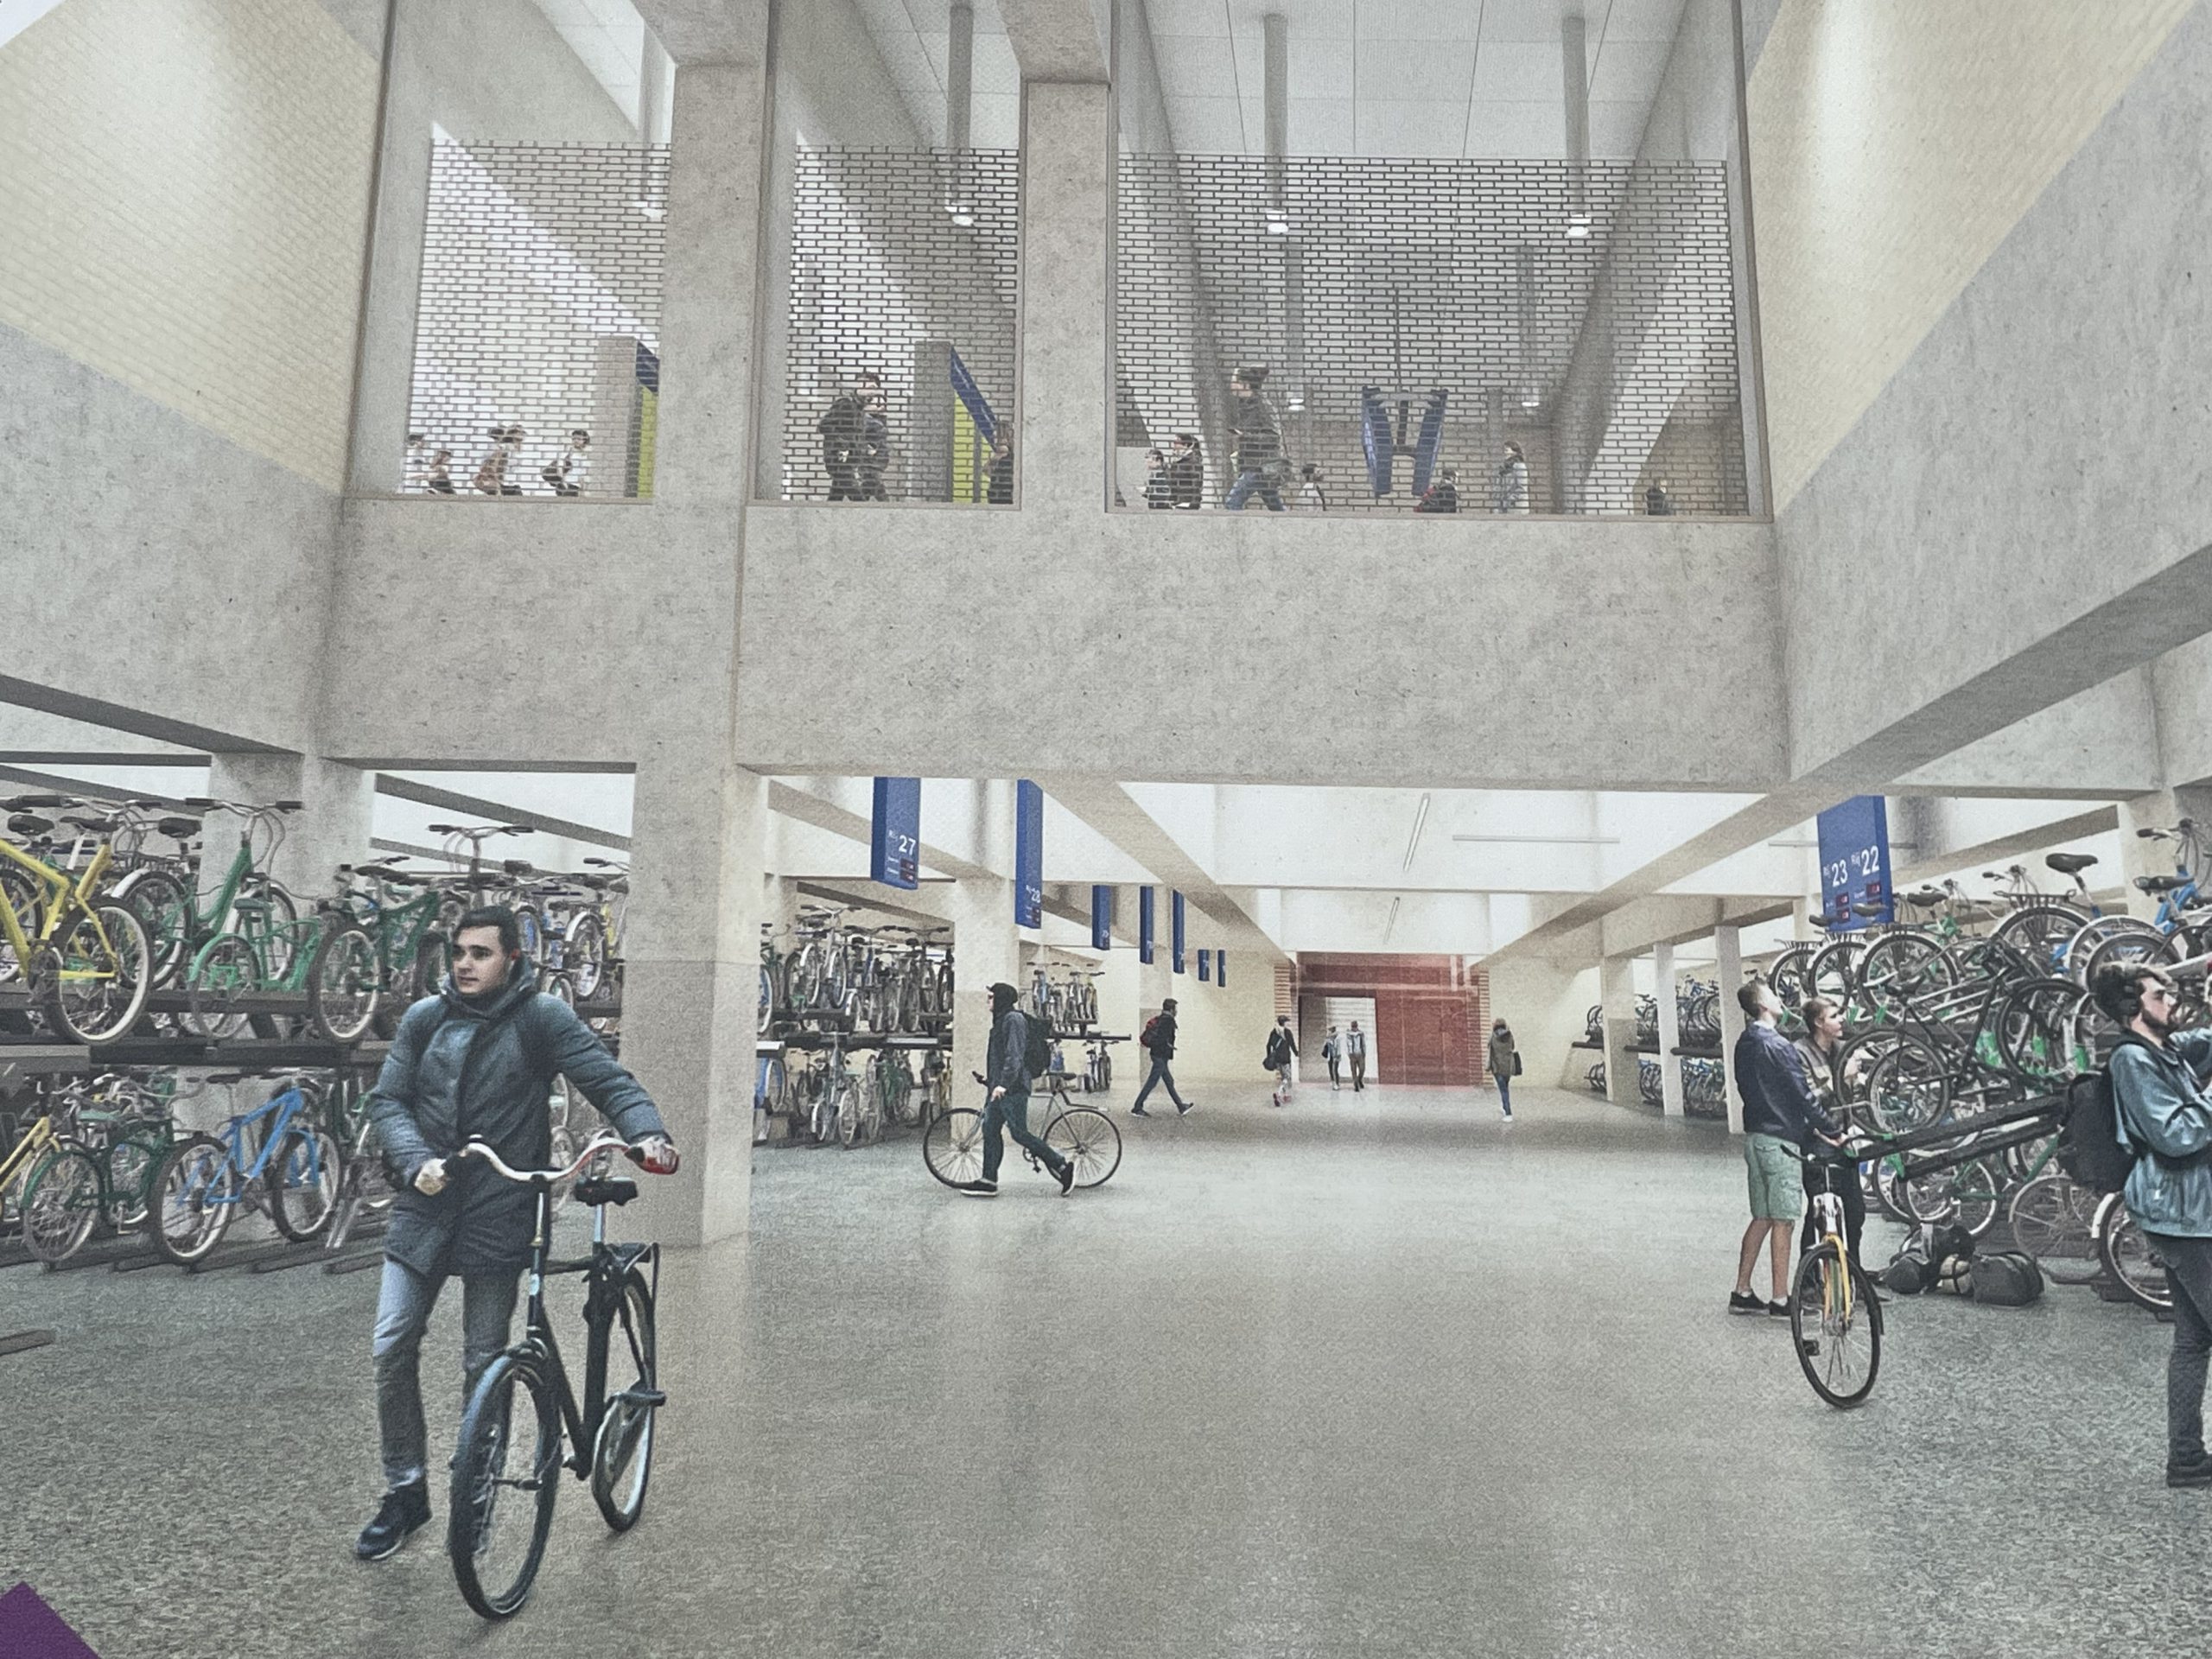 Het toekomstige fietsstation